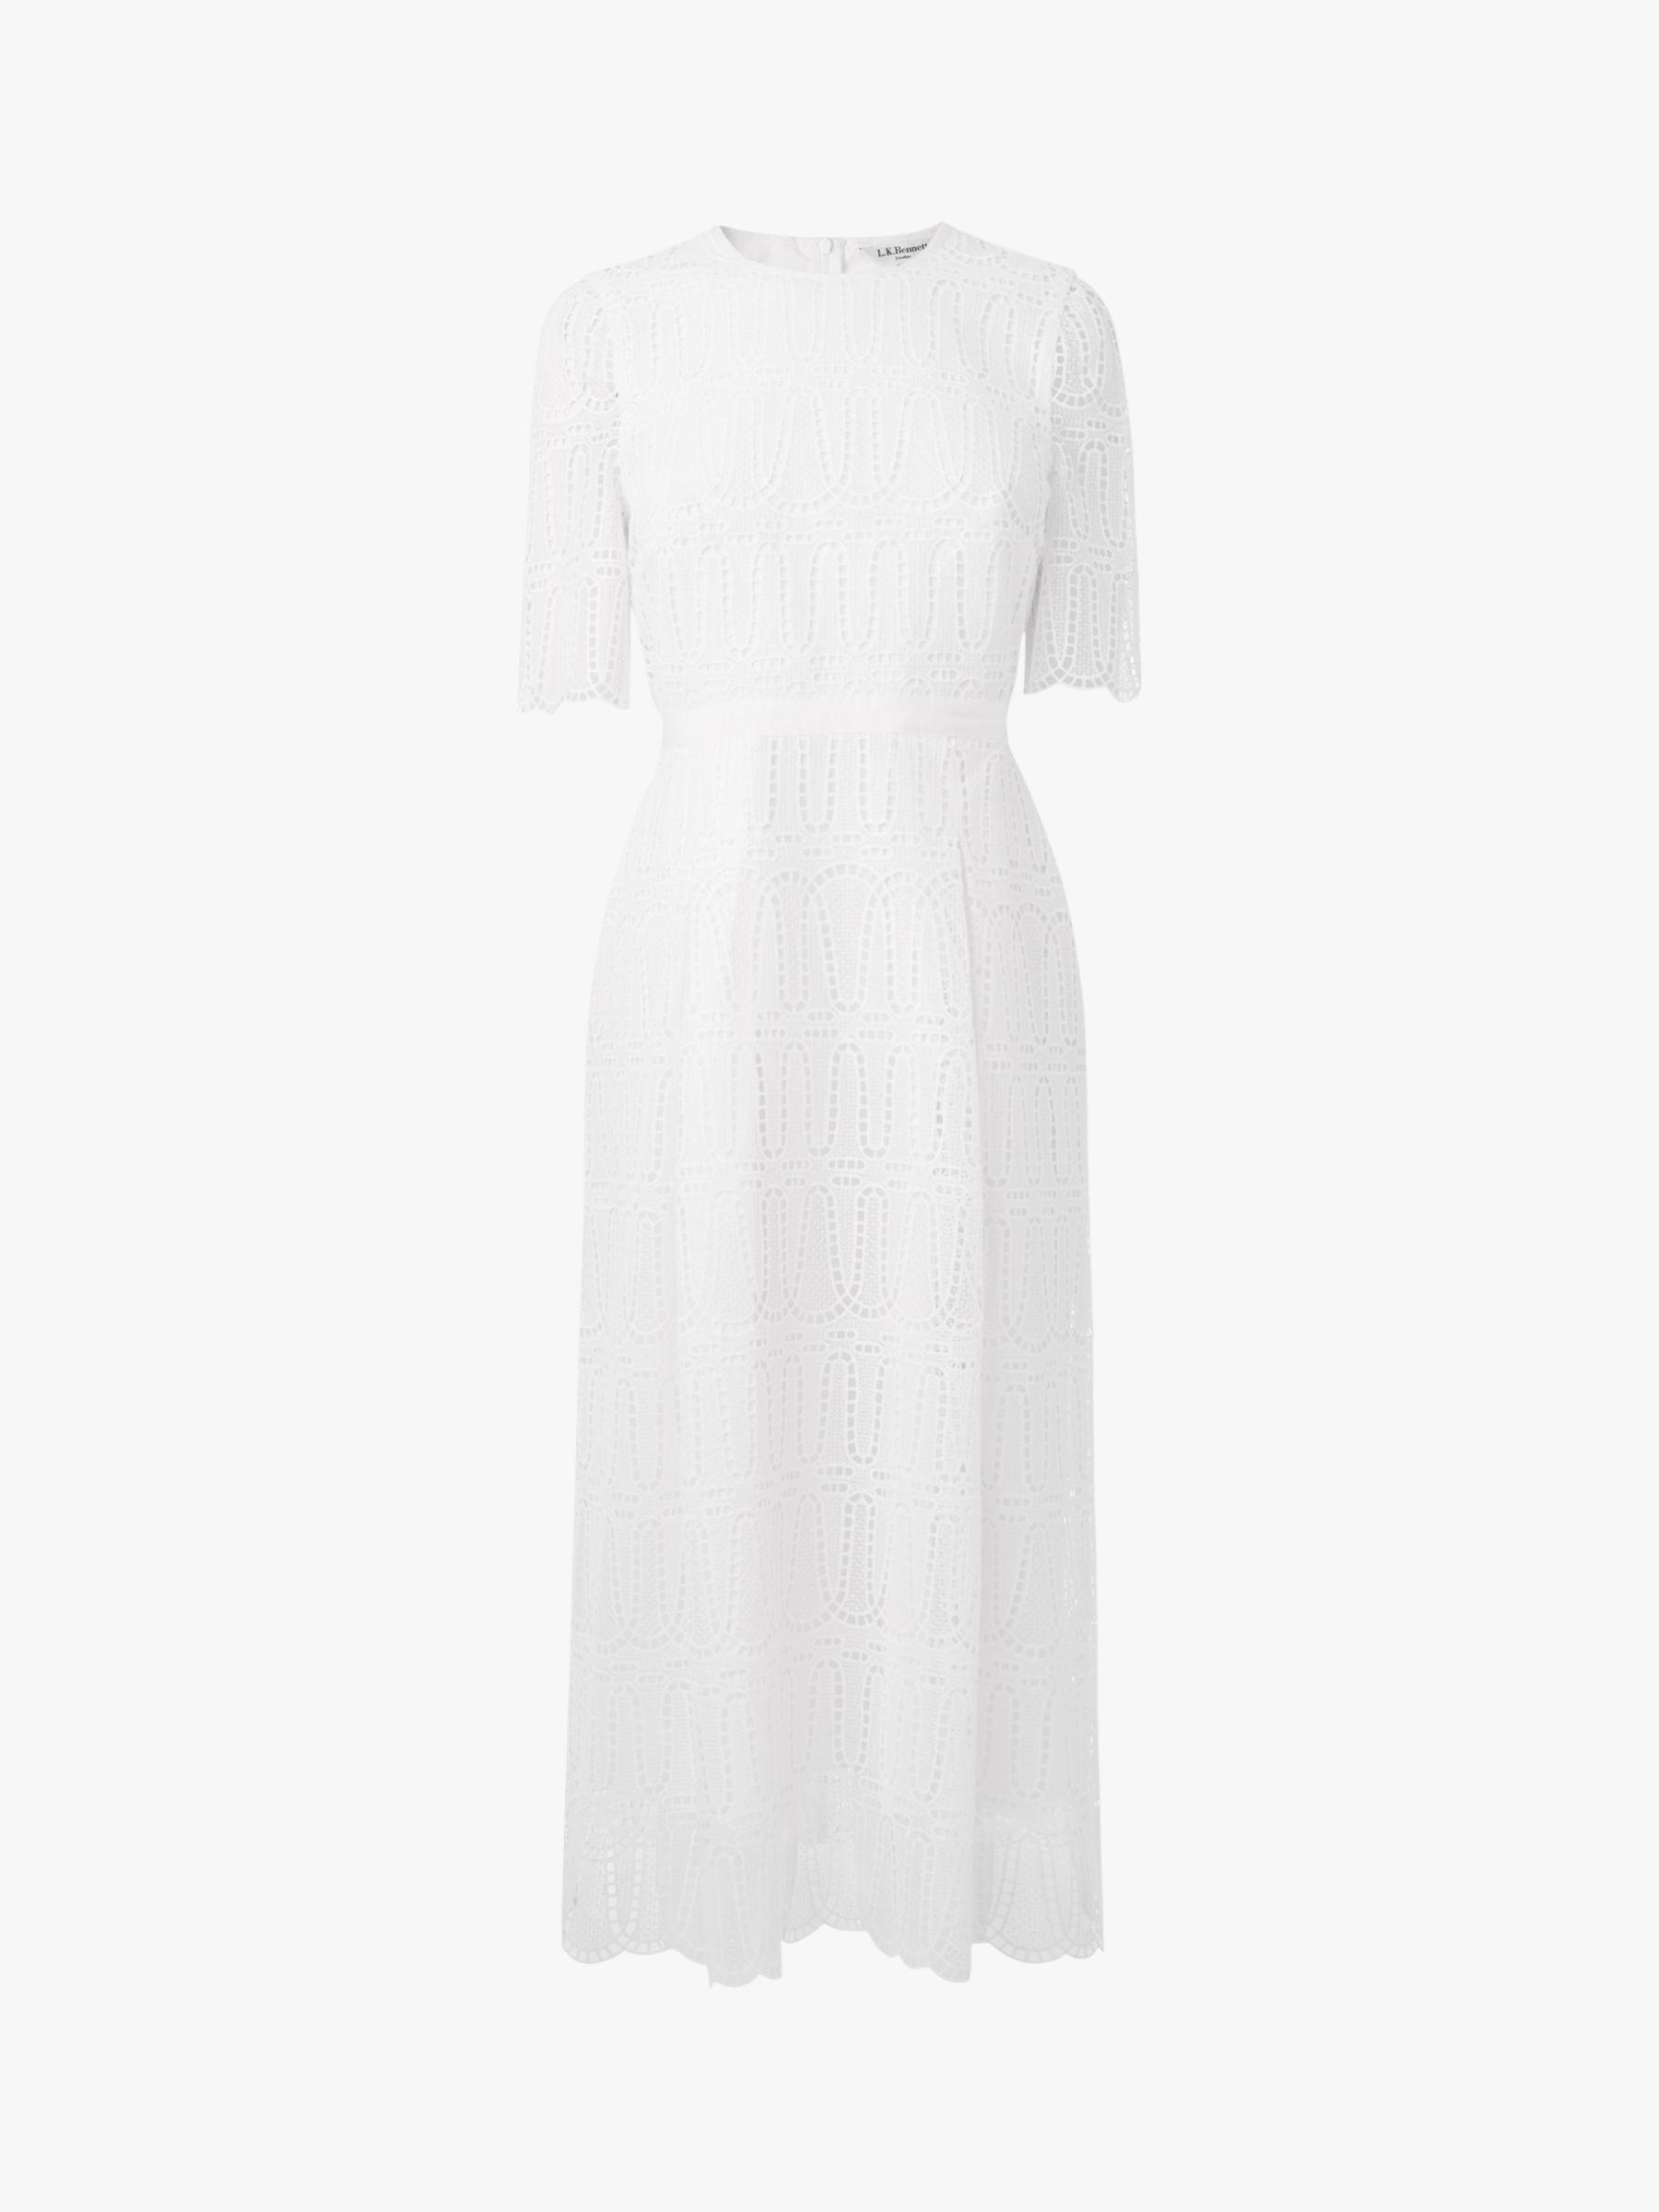 lk bennett white dress